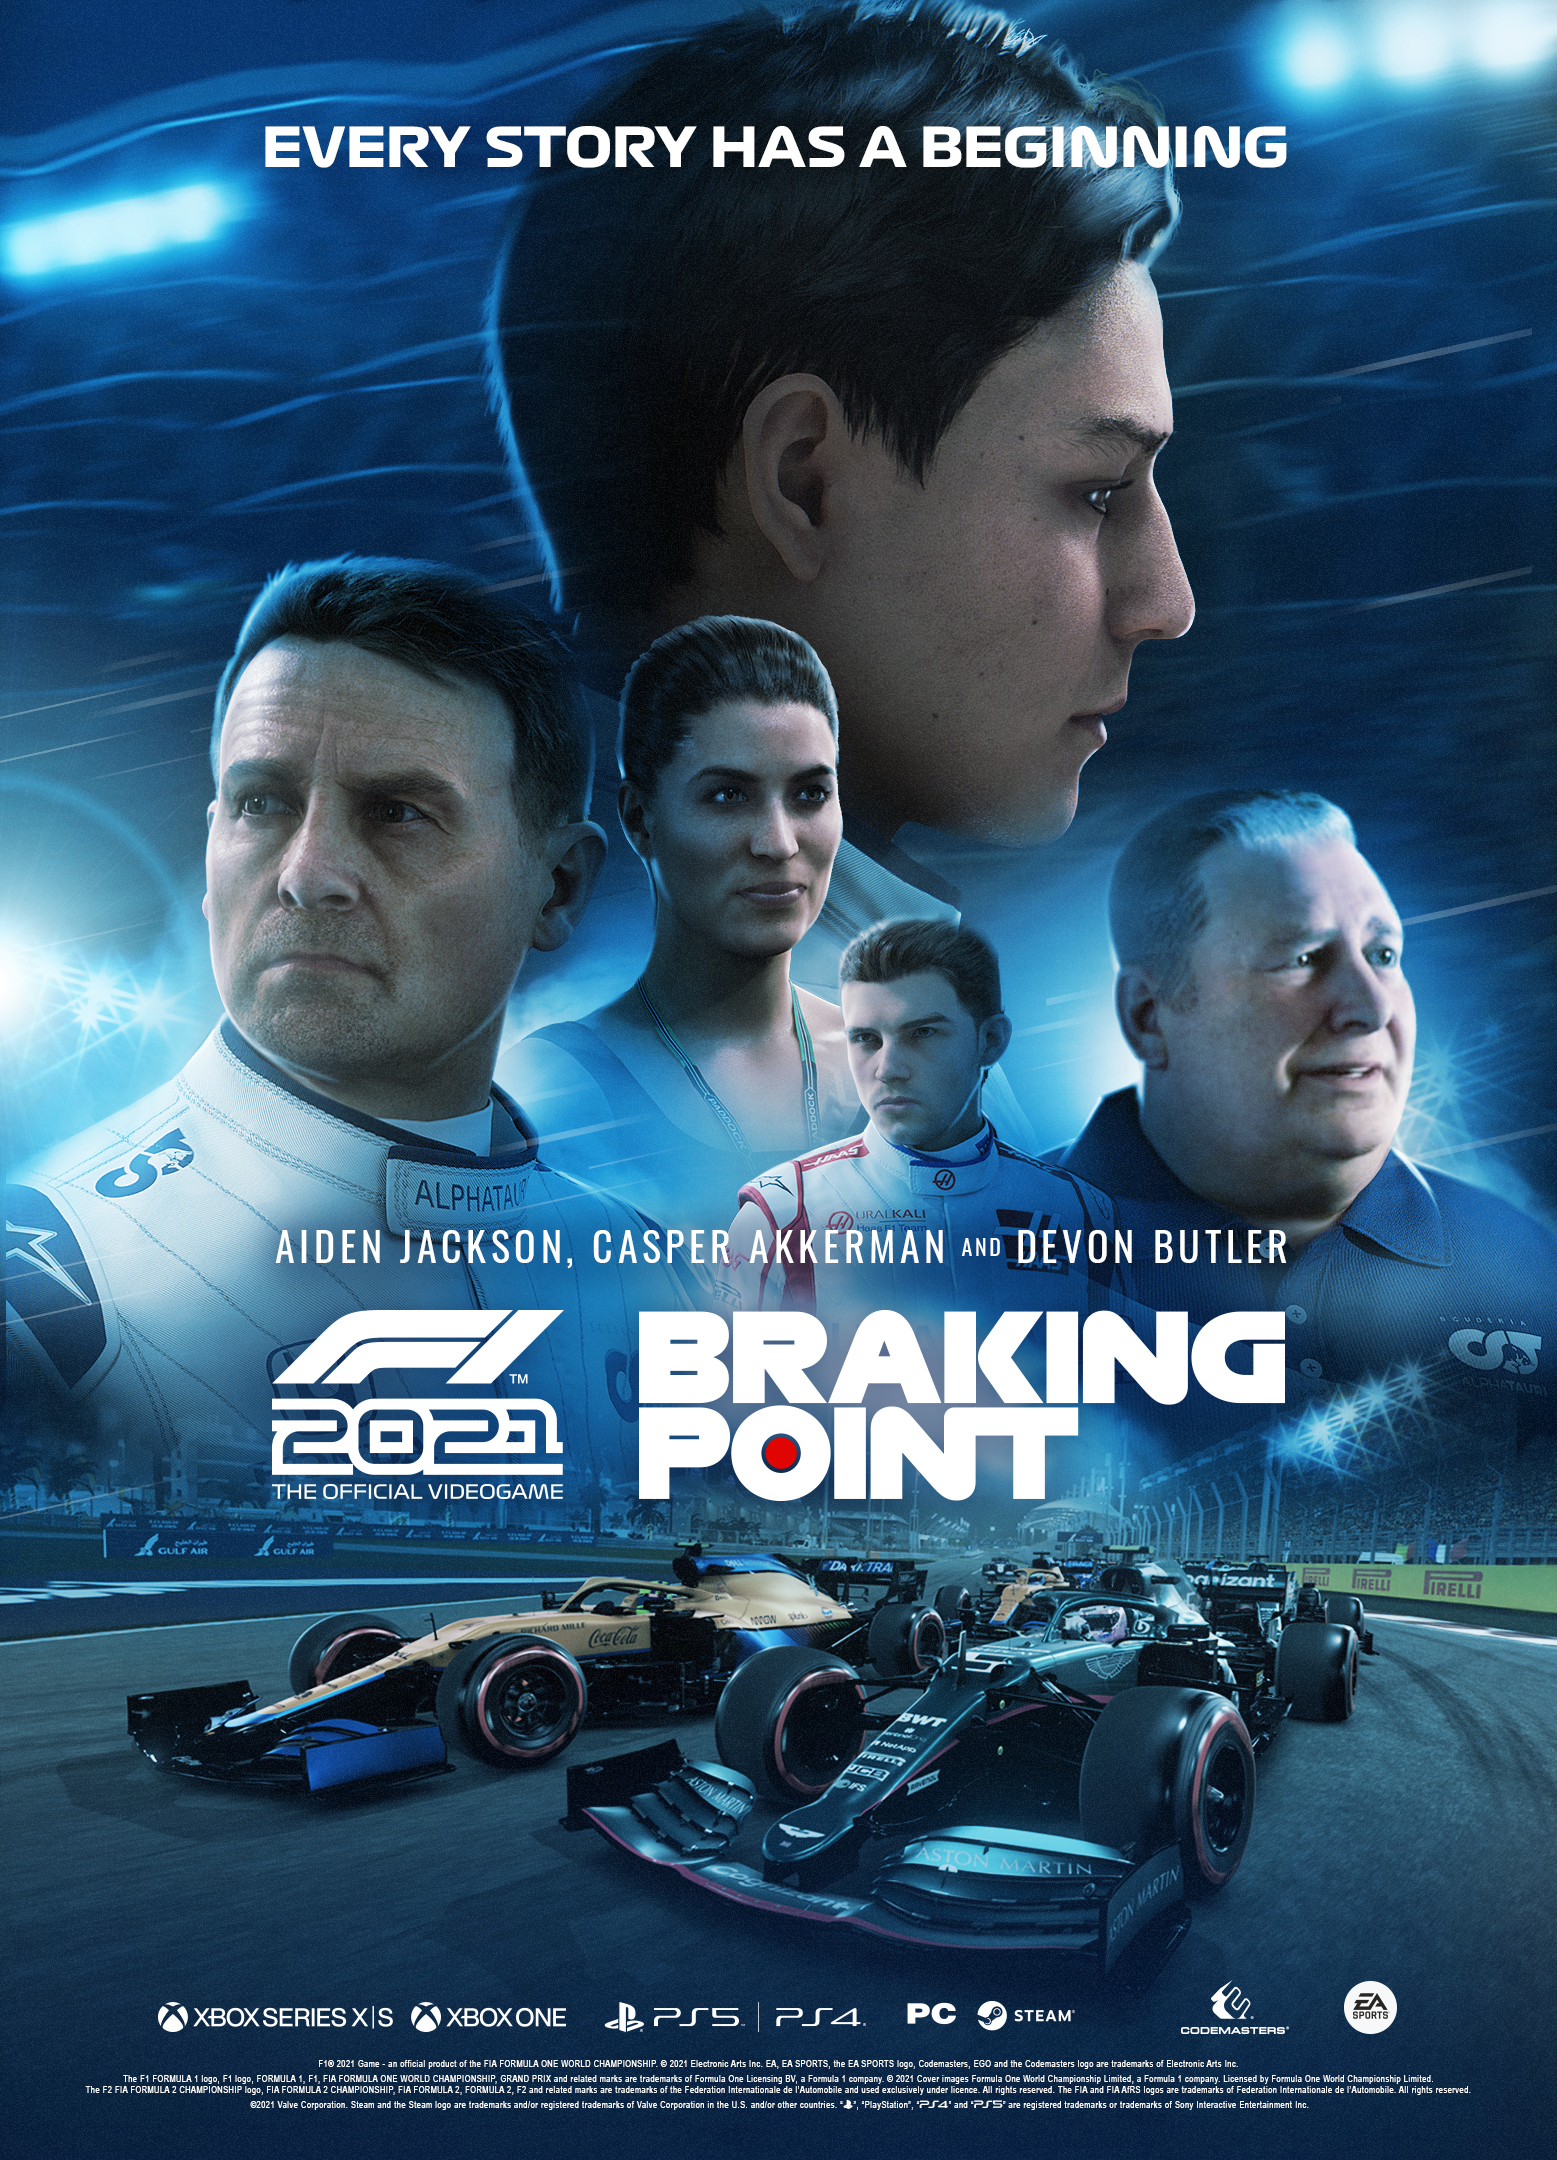 Codemasters y EA SPORTS presentan Braking Point, la emocionante historia del videojuego F1 2021